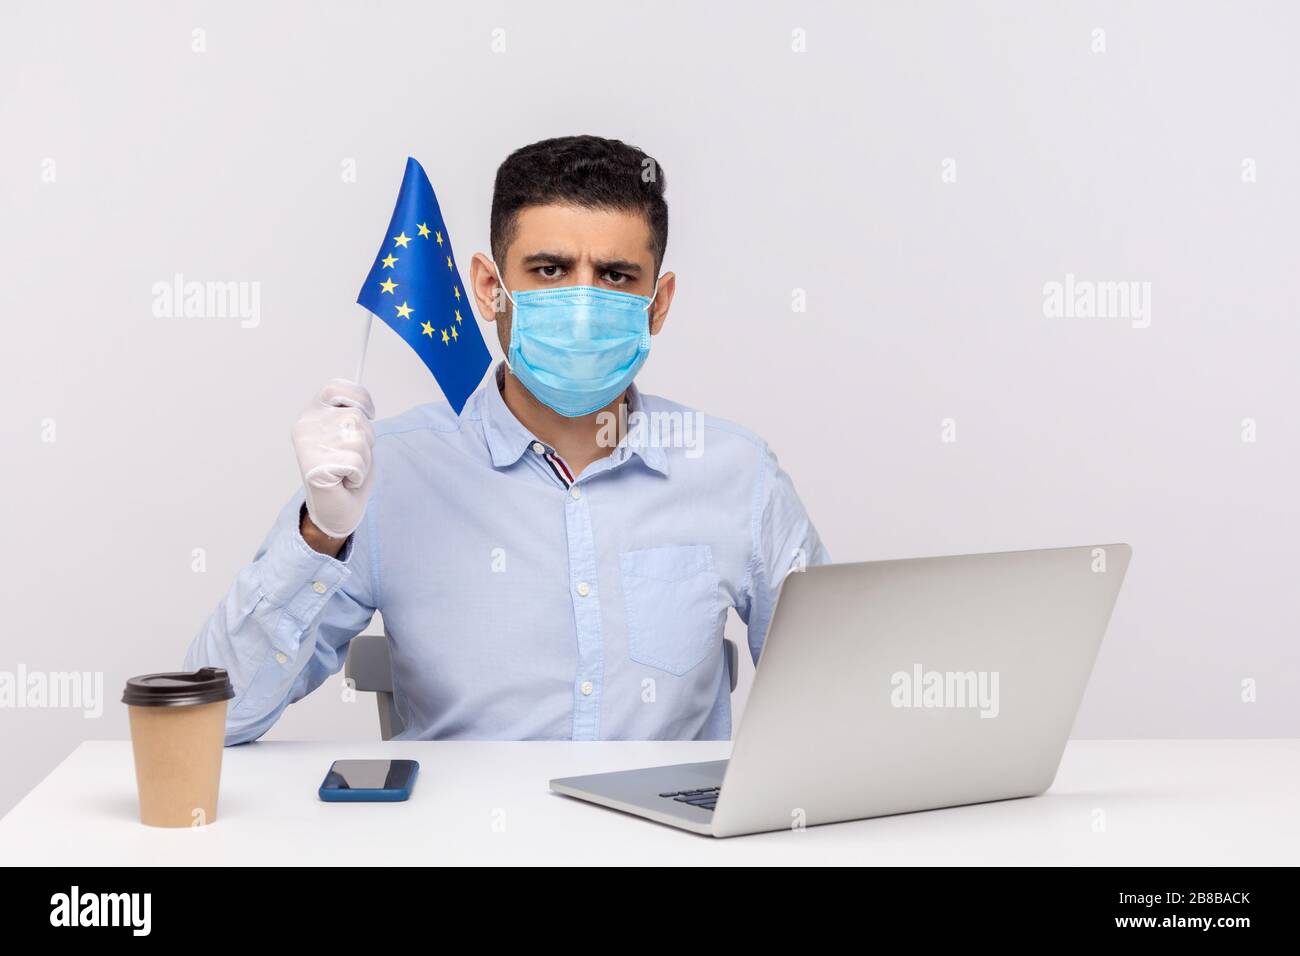 Ufficiale in maschera igienica e guanti in possesso della bandiera UE, preoccupata, avvertimento di epidemia di coronavirus in Europa, quarantena e misure preventive f Foto Stock